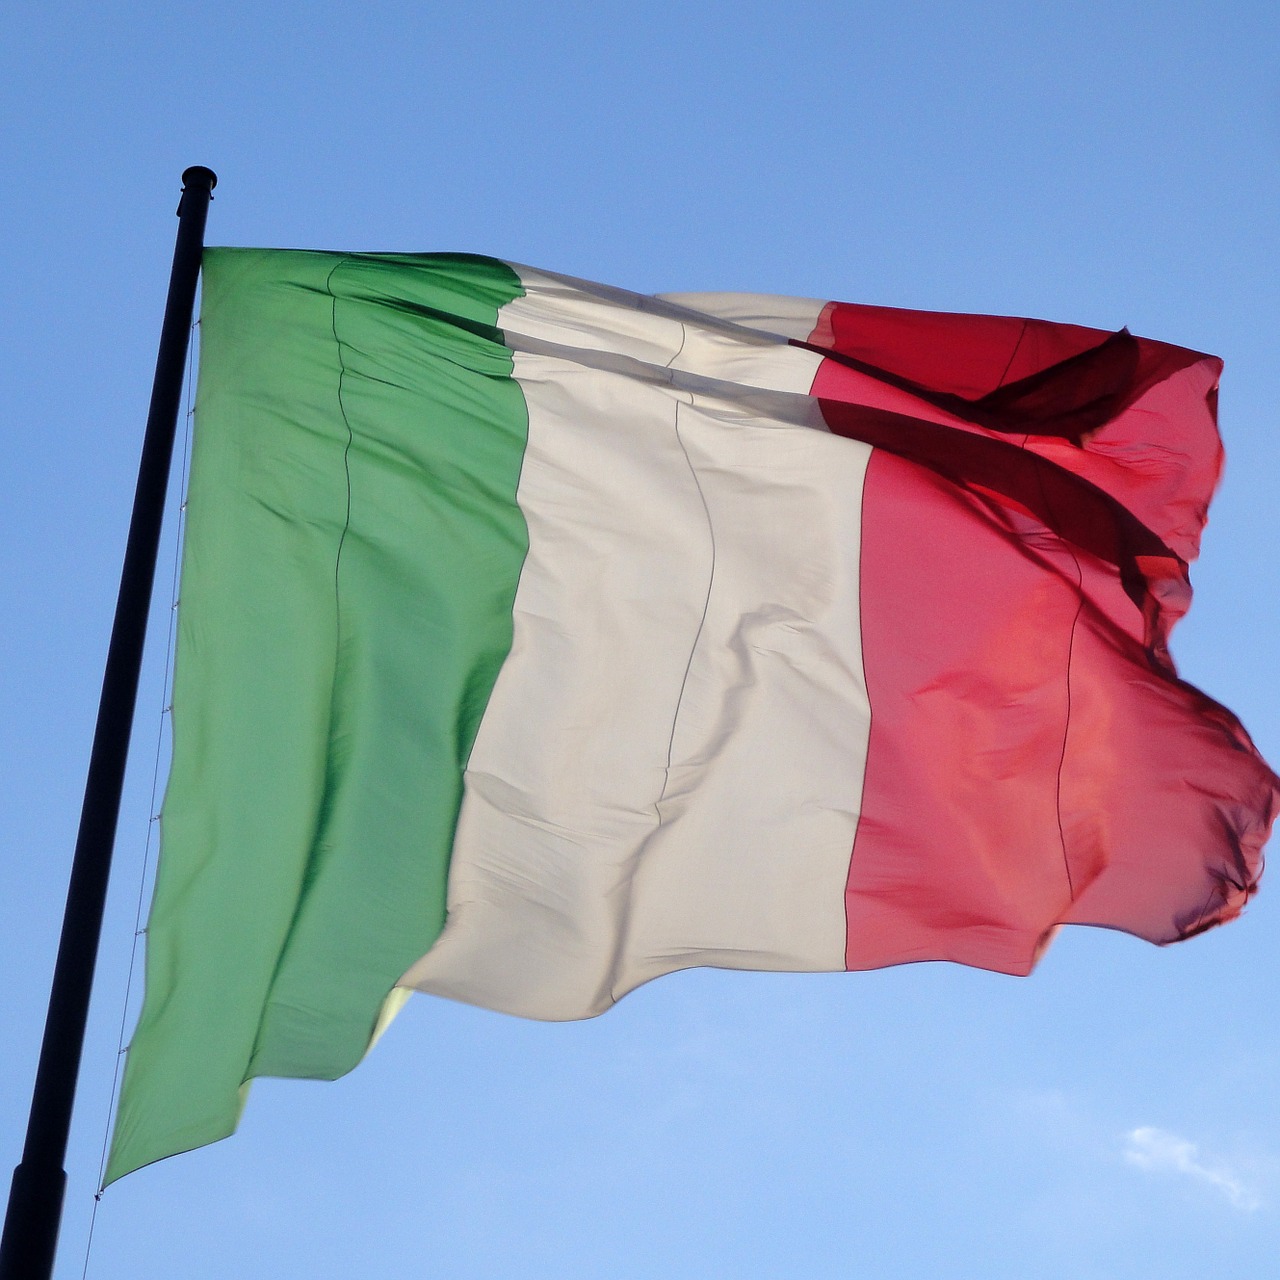 Decreto Cura Italia: cosa prevede in materia di fisco, credito, lavoro